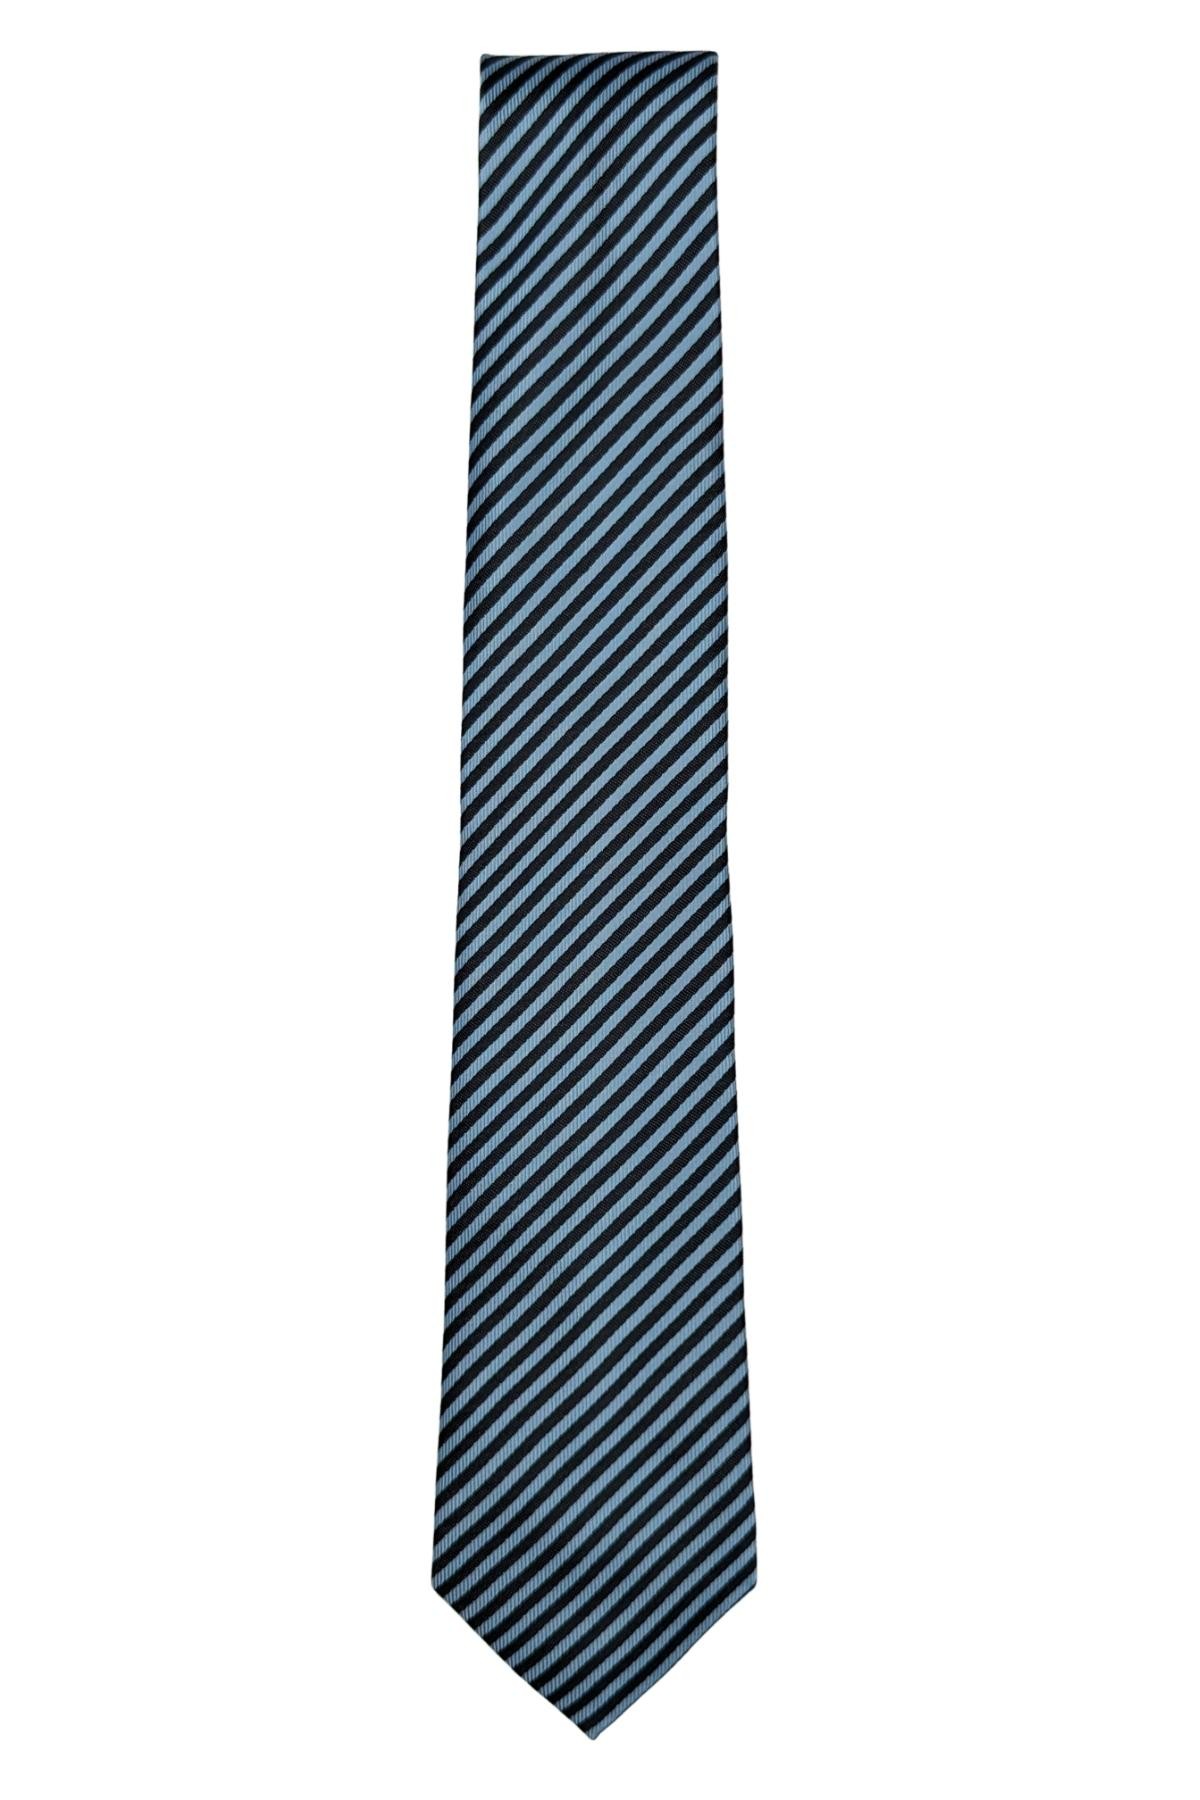 7 Cm Genişliğinde İnce Çizgili Kravat - Mavi